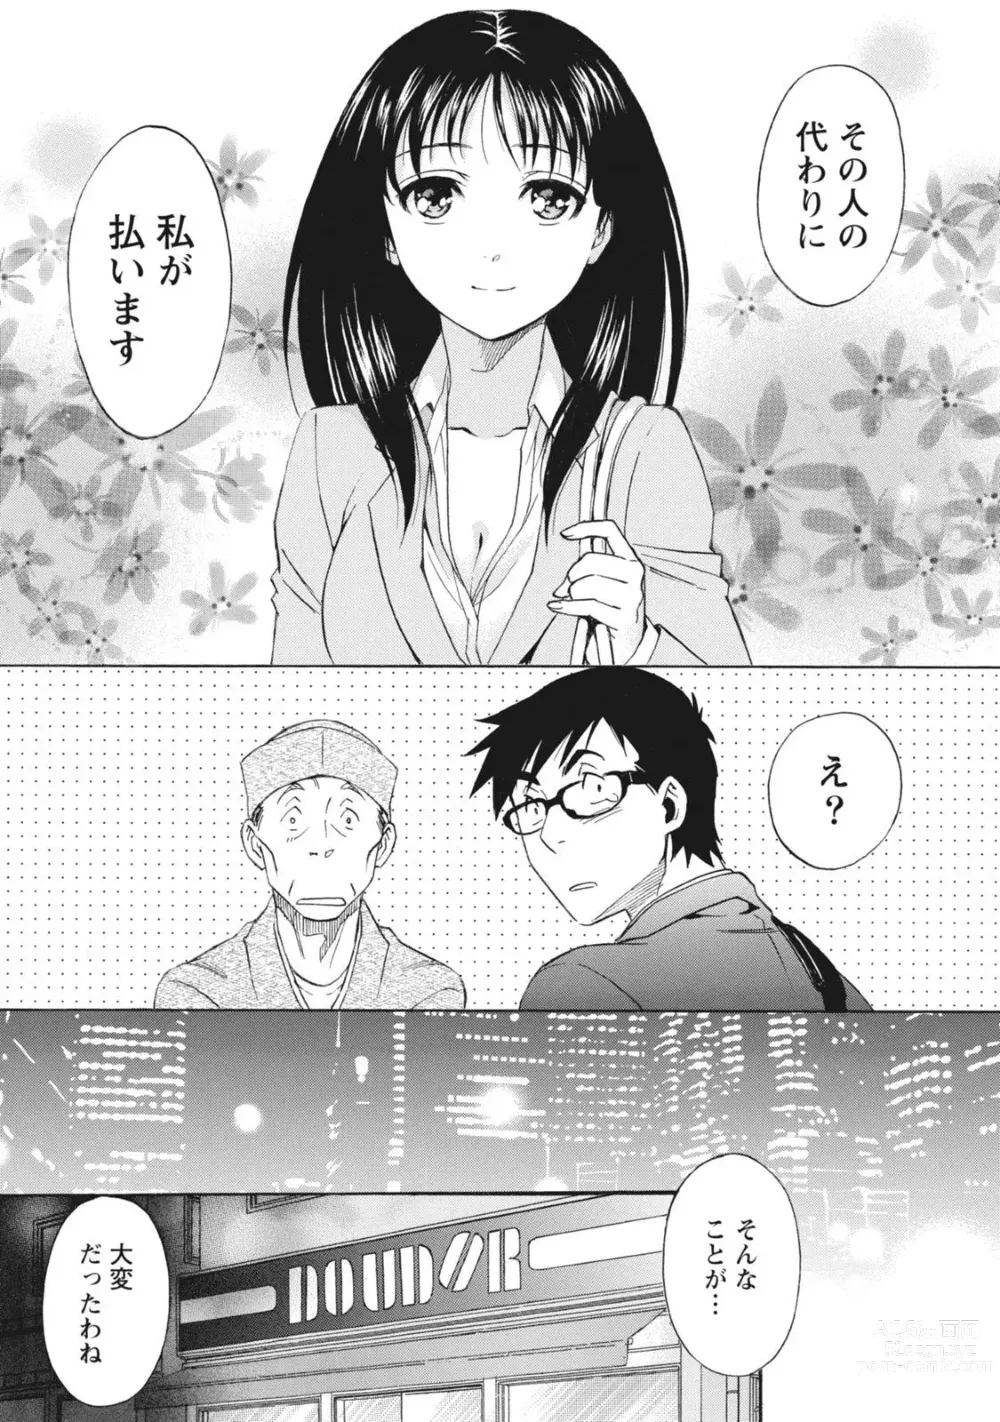 Page 13 of manga Nisekon!